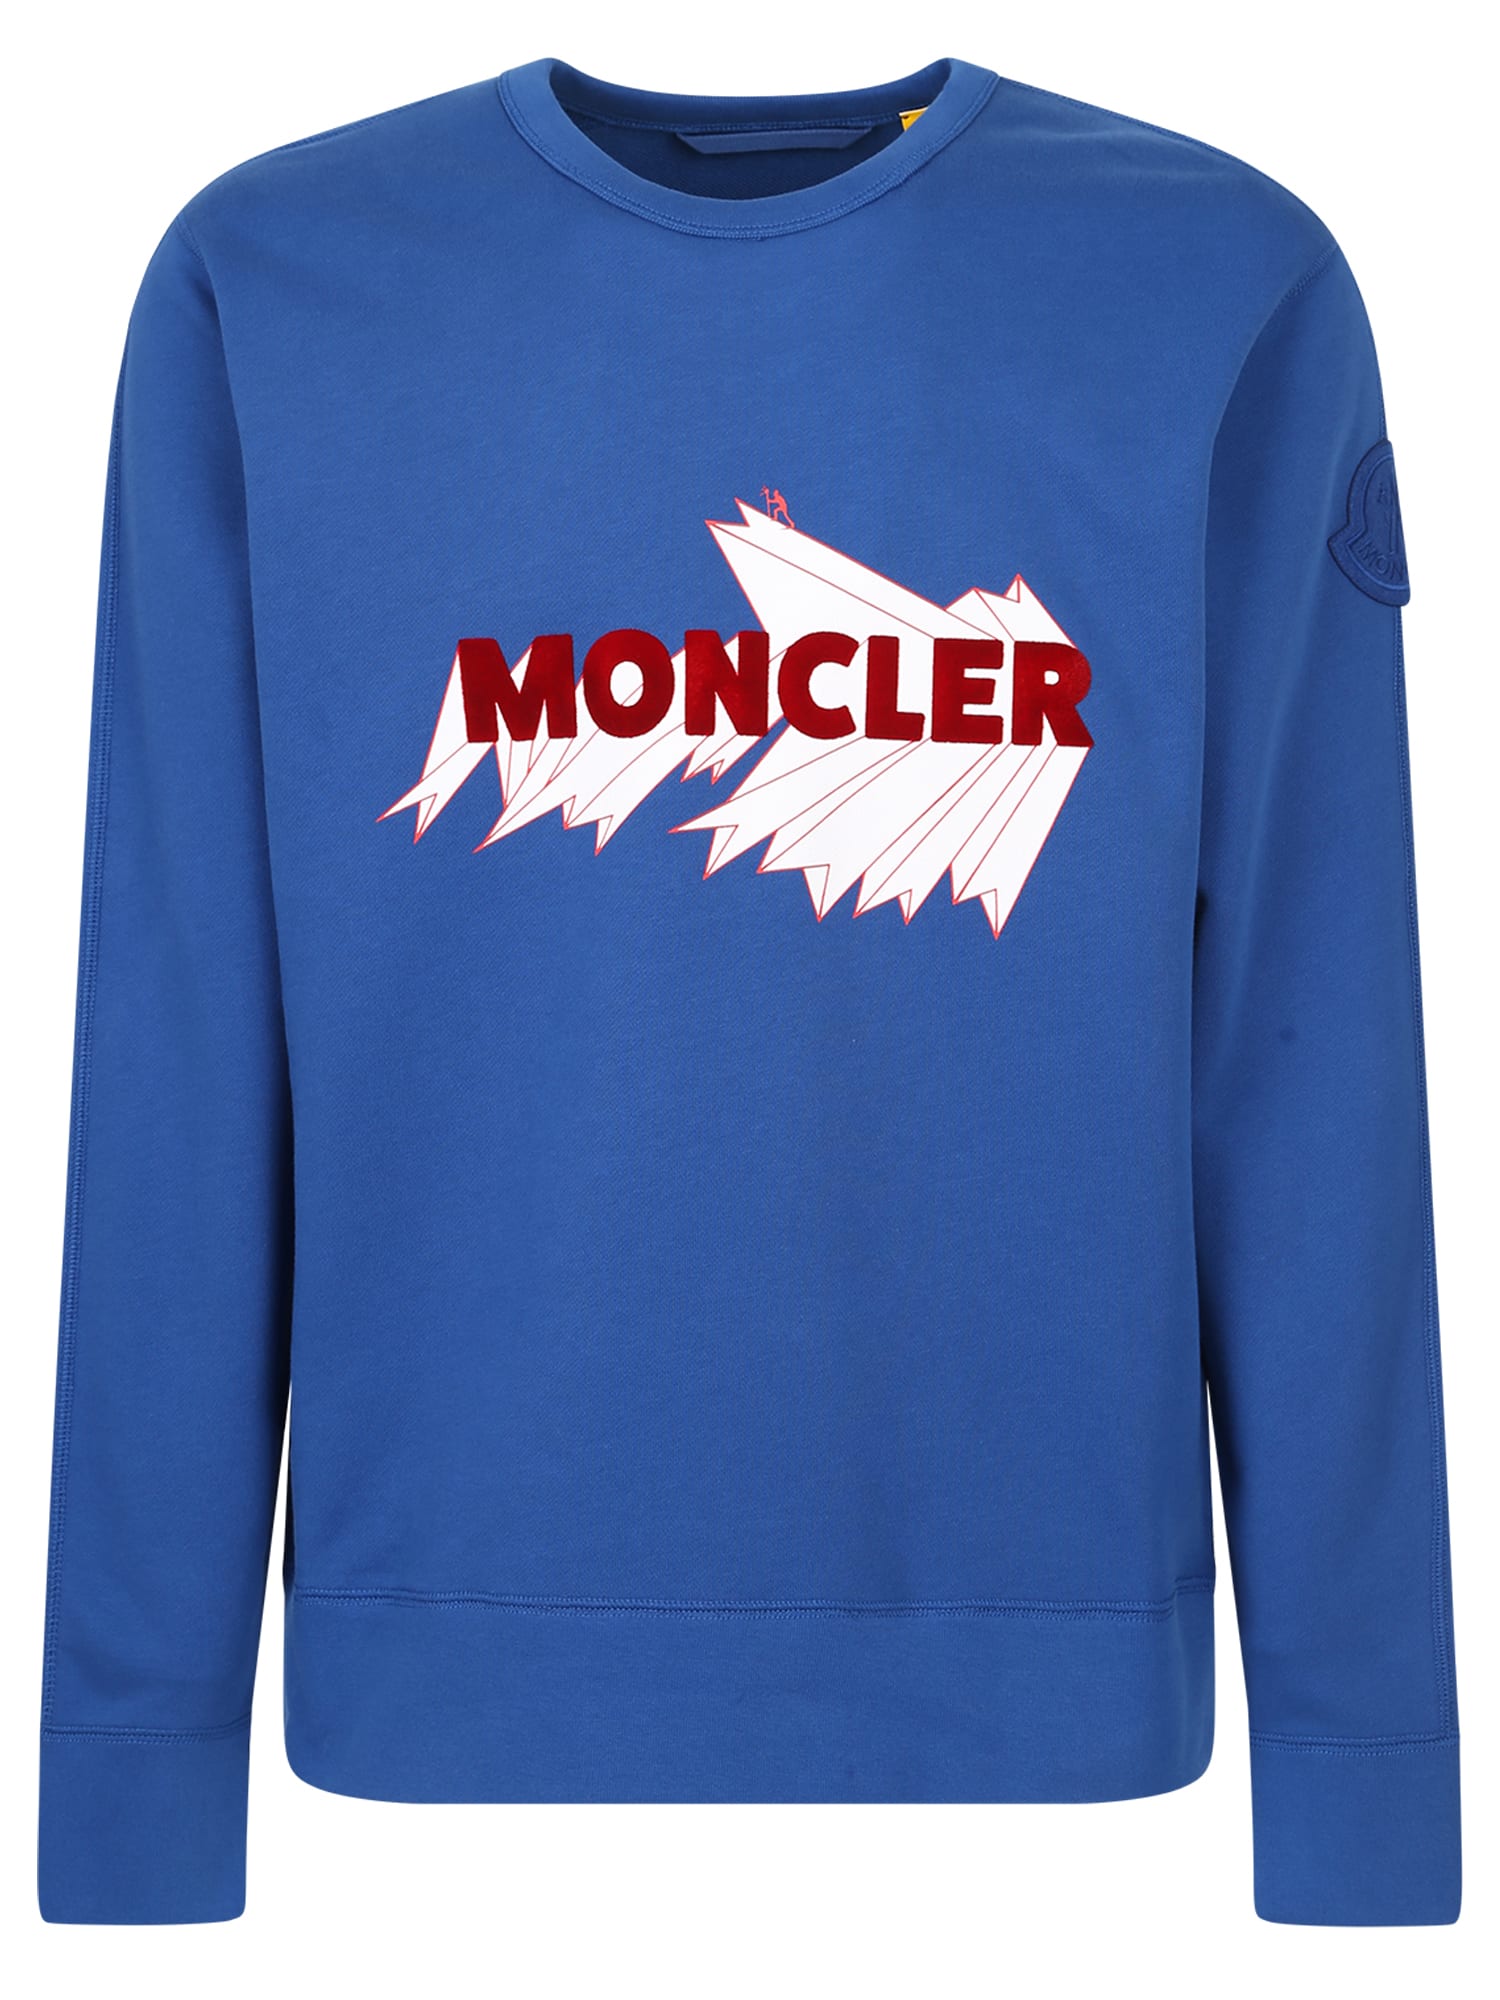 Moncler Genius 2 Moncler 1952 Logo Sweatshirt